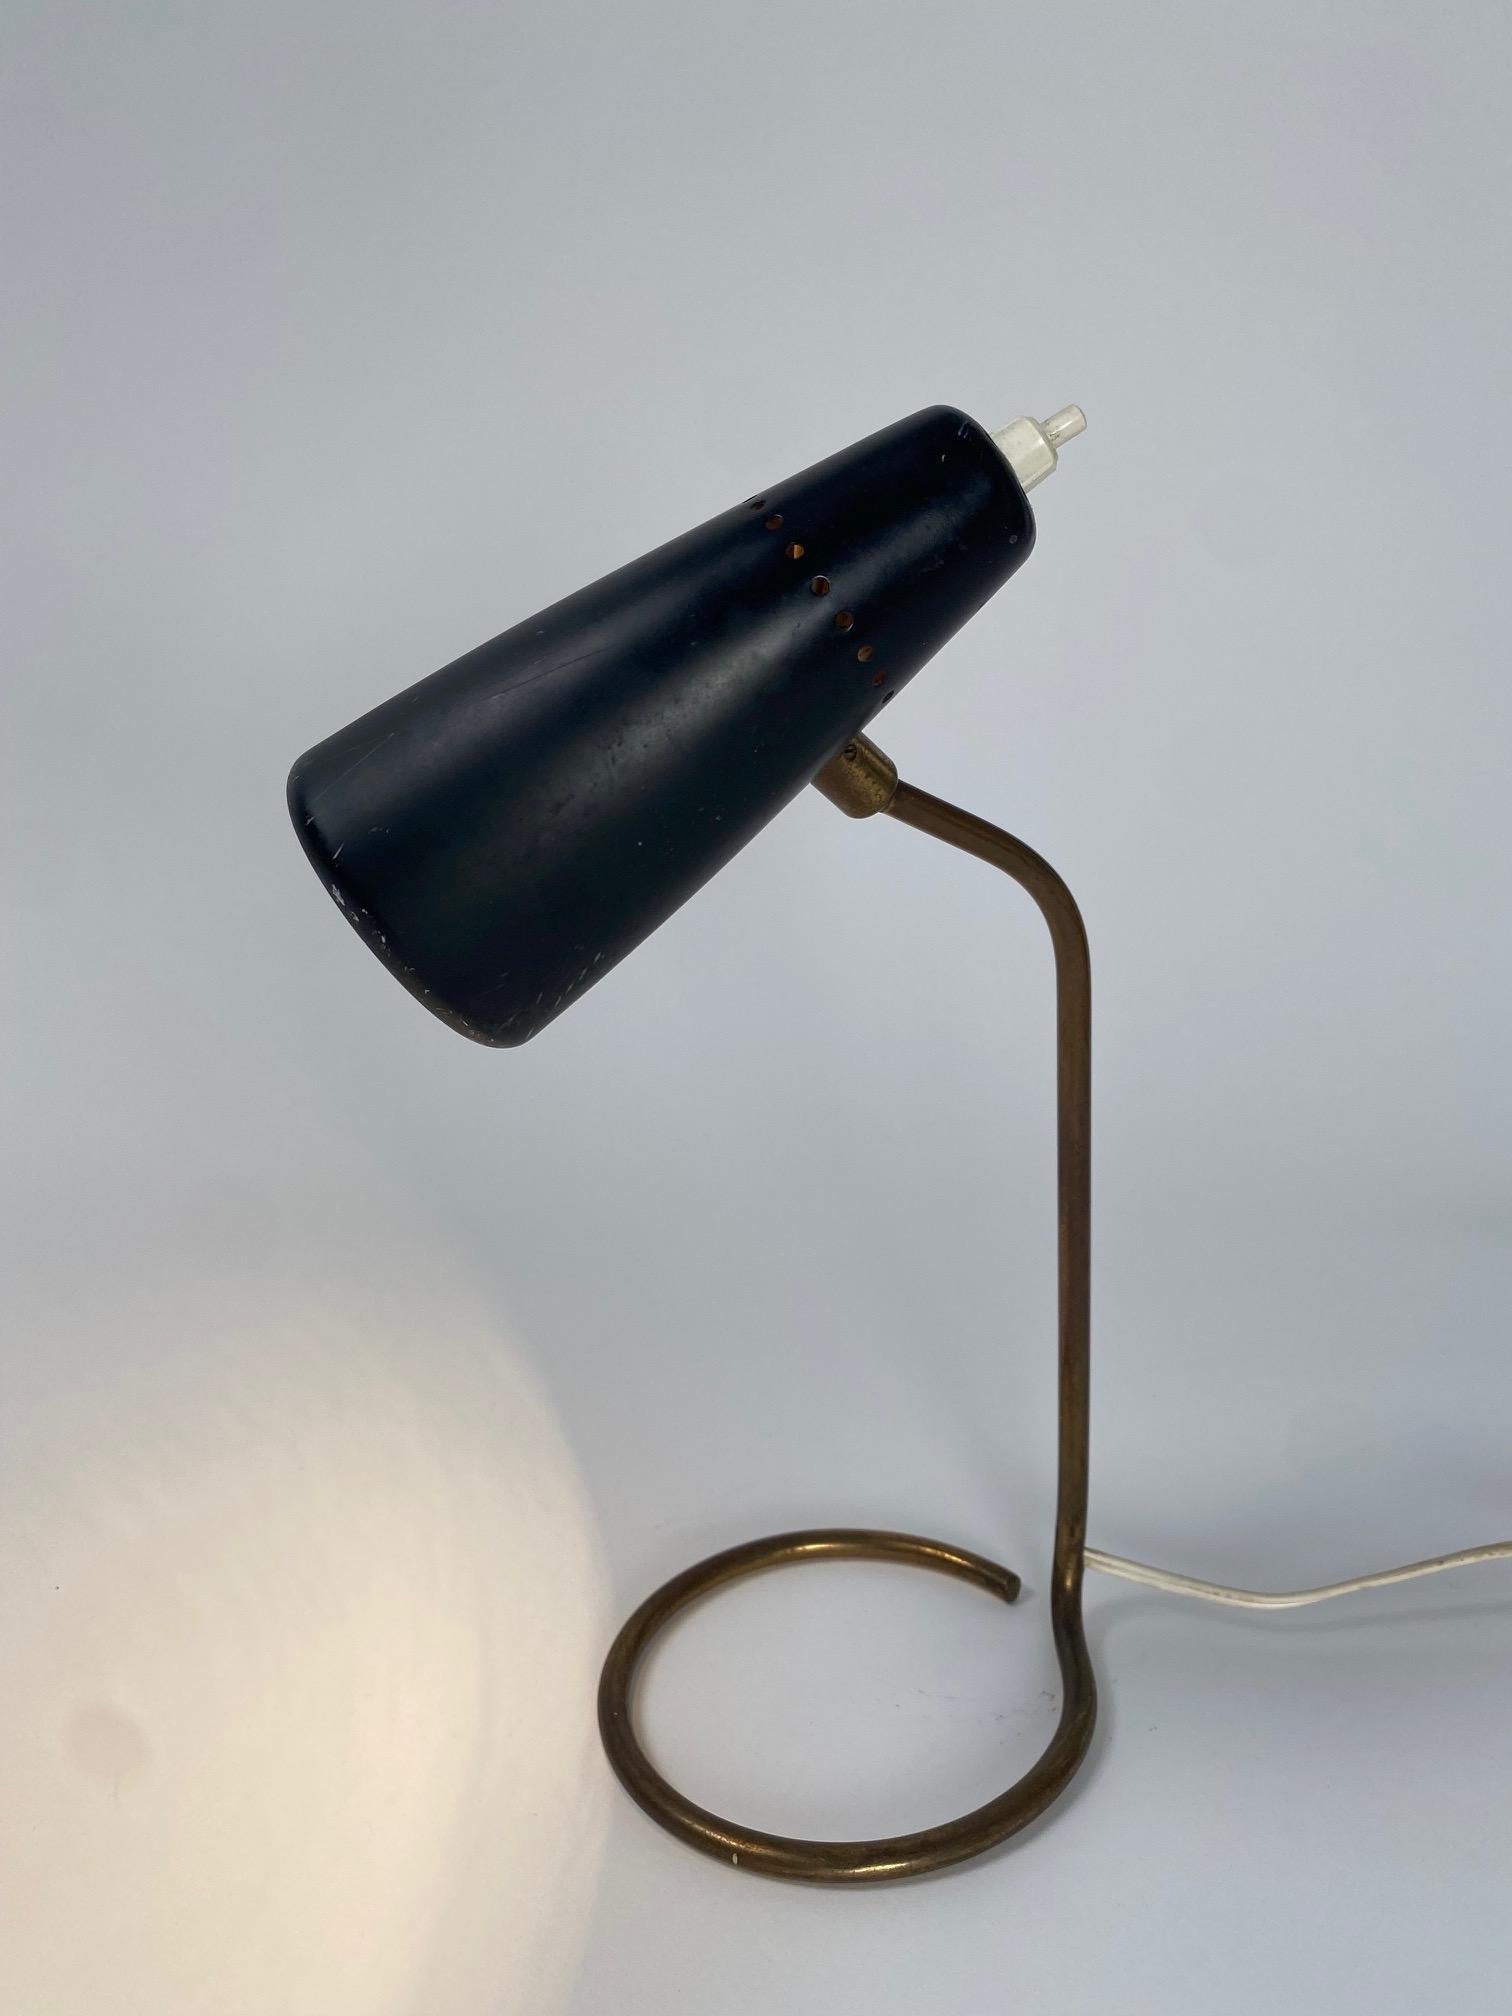 Lampe de table originale Stilnovo, Italie, design des années 1950

Il s'agit d'une lampe de table rare et raffinée, qui exprime bien l'élégance sophistiquée de la célèbre entreprise italienne. Le Label est situé à l'intérieur de l'abat-jour